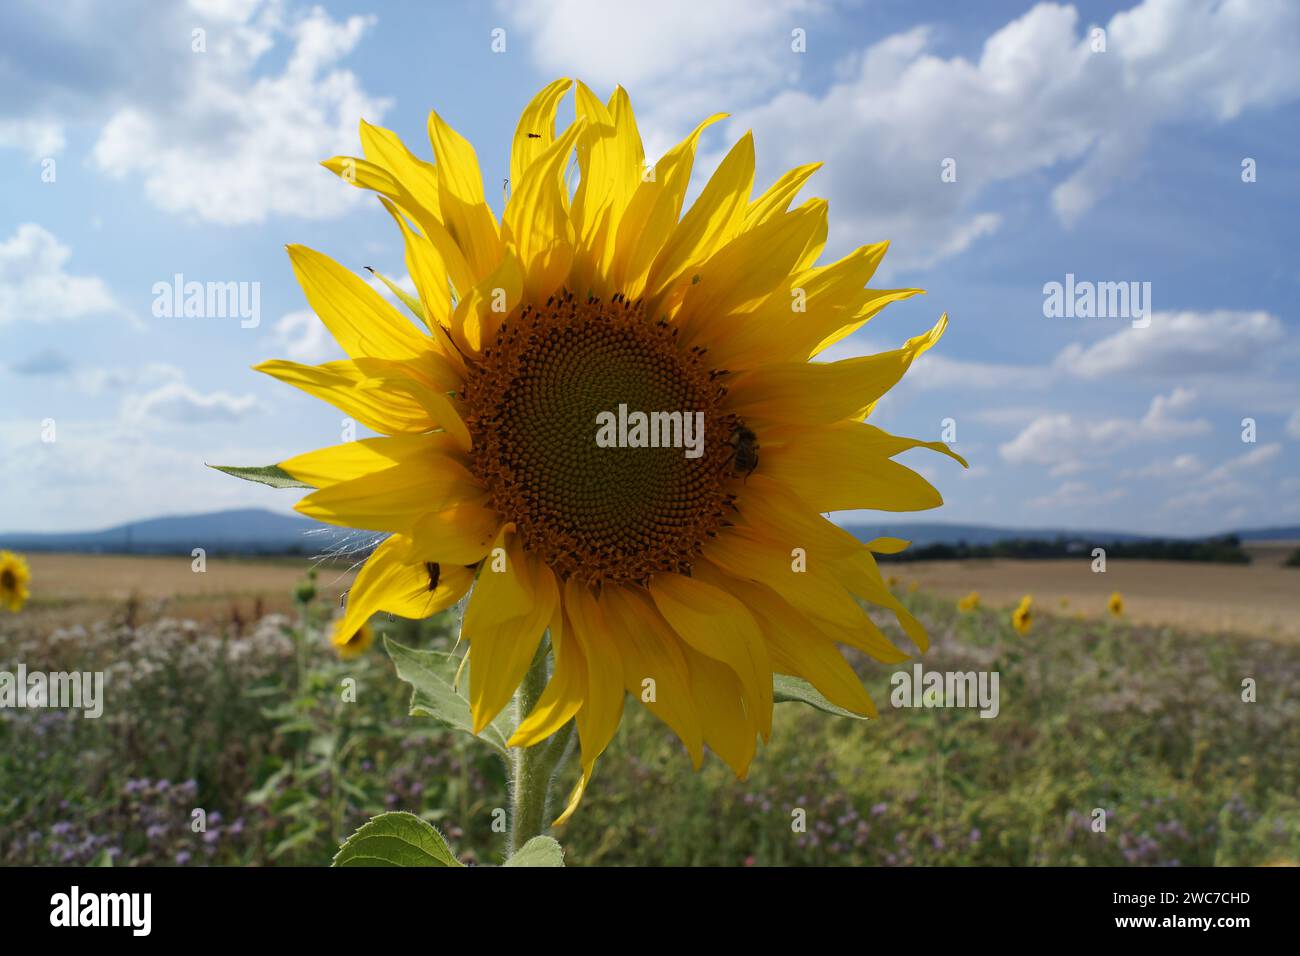 Floraison d'un tournesol dans une bande de fleurs sauvages au bord d'un champ en contre-jour avec un bourdon. Un ciel bleu-blanc ensoleillé. Banque D'Images